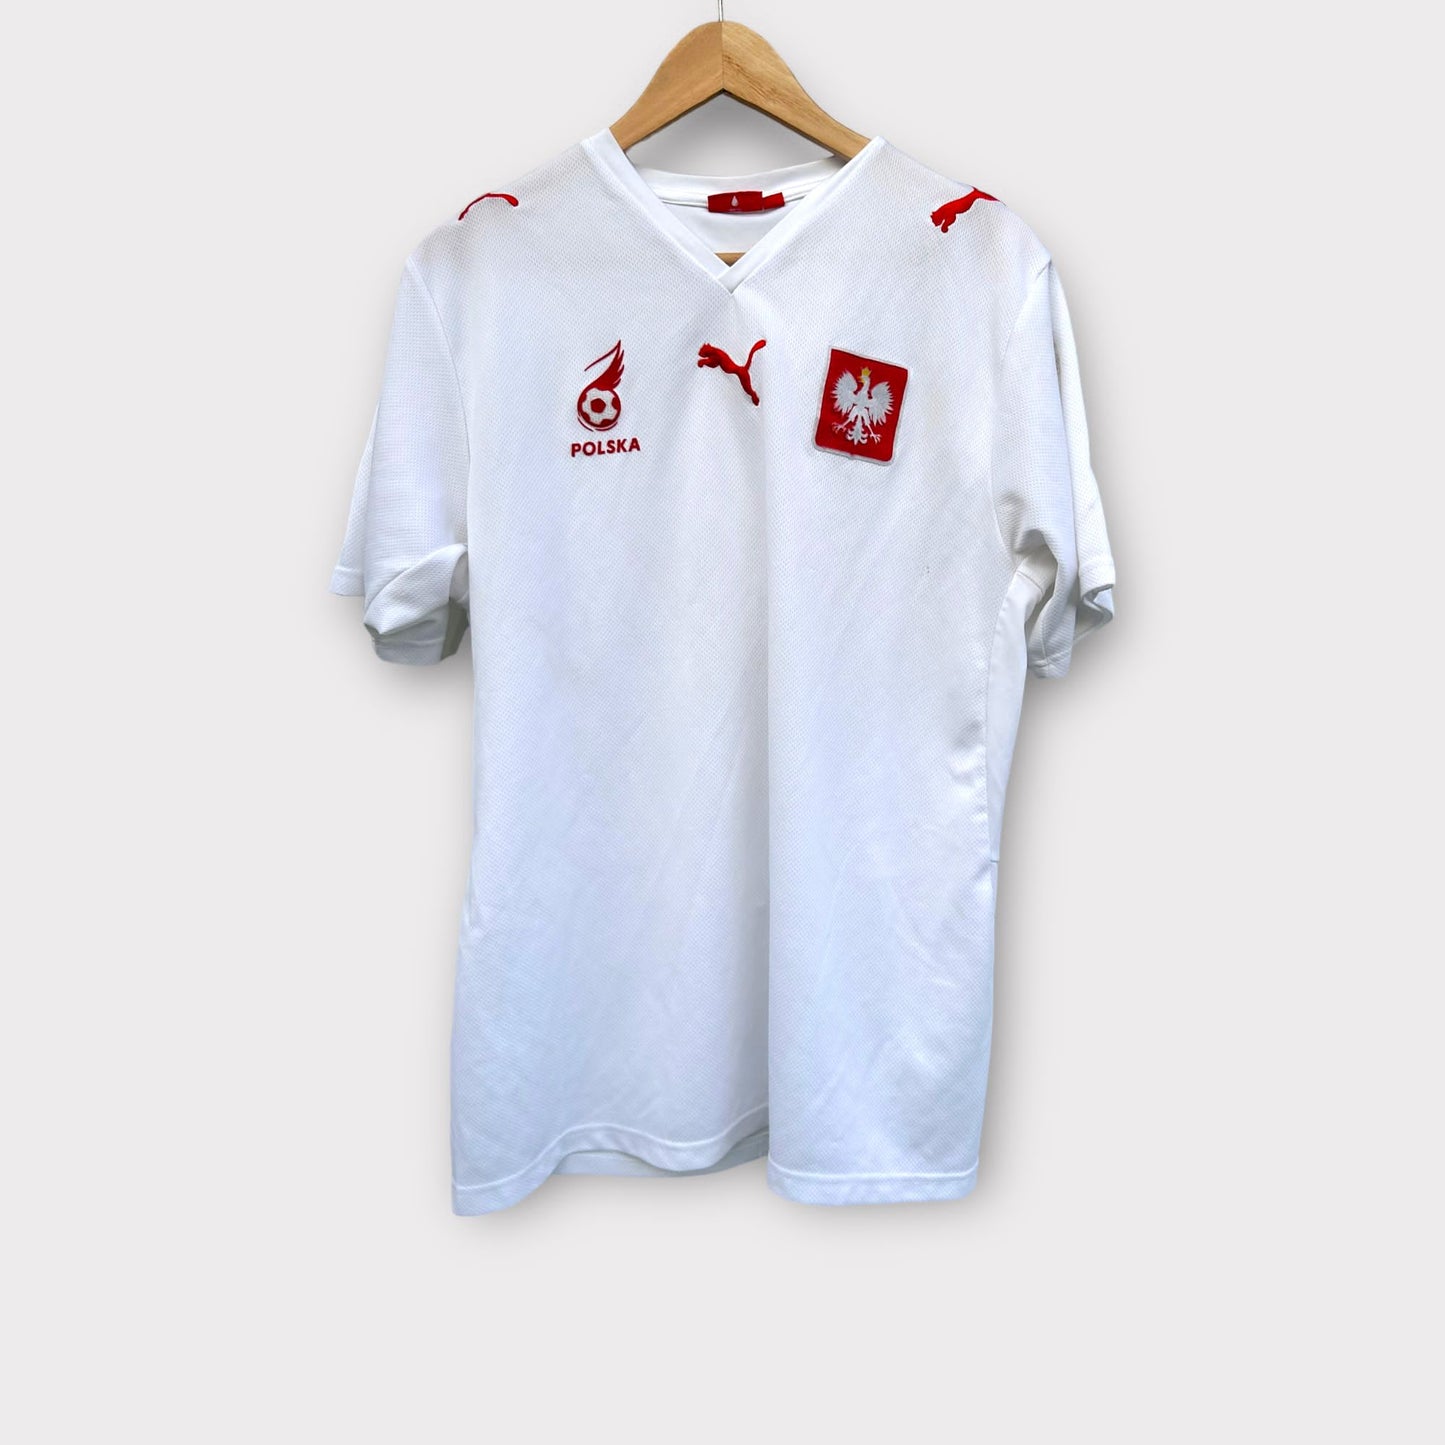 Poland 2008 Home Shirt (L)